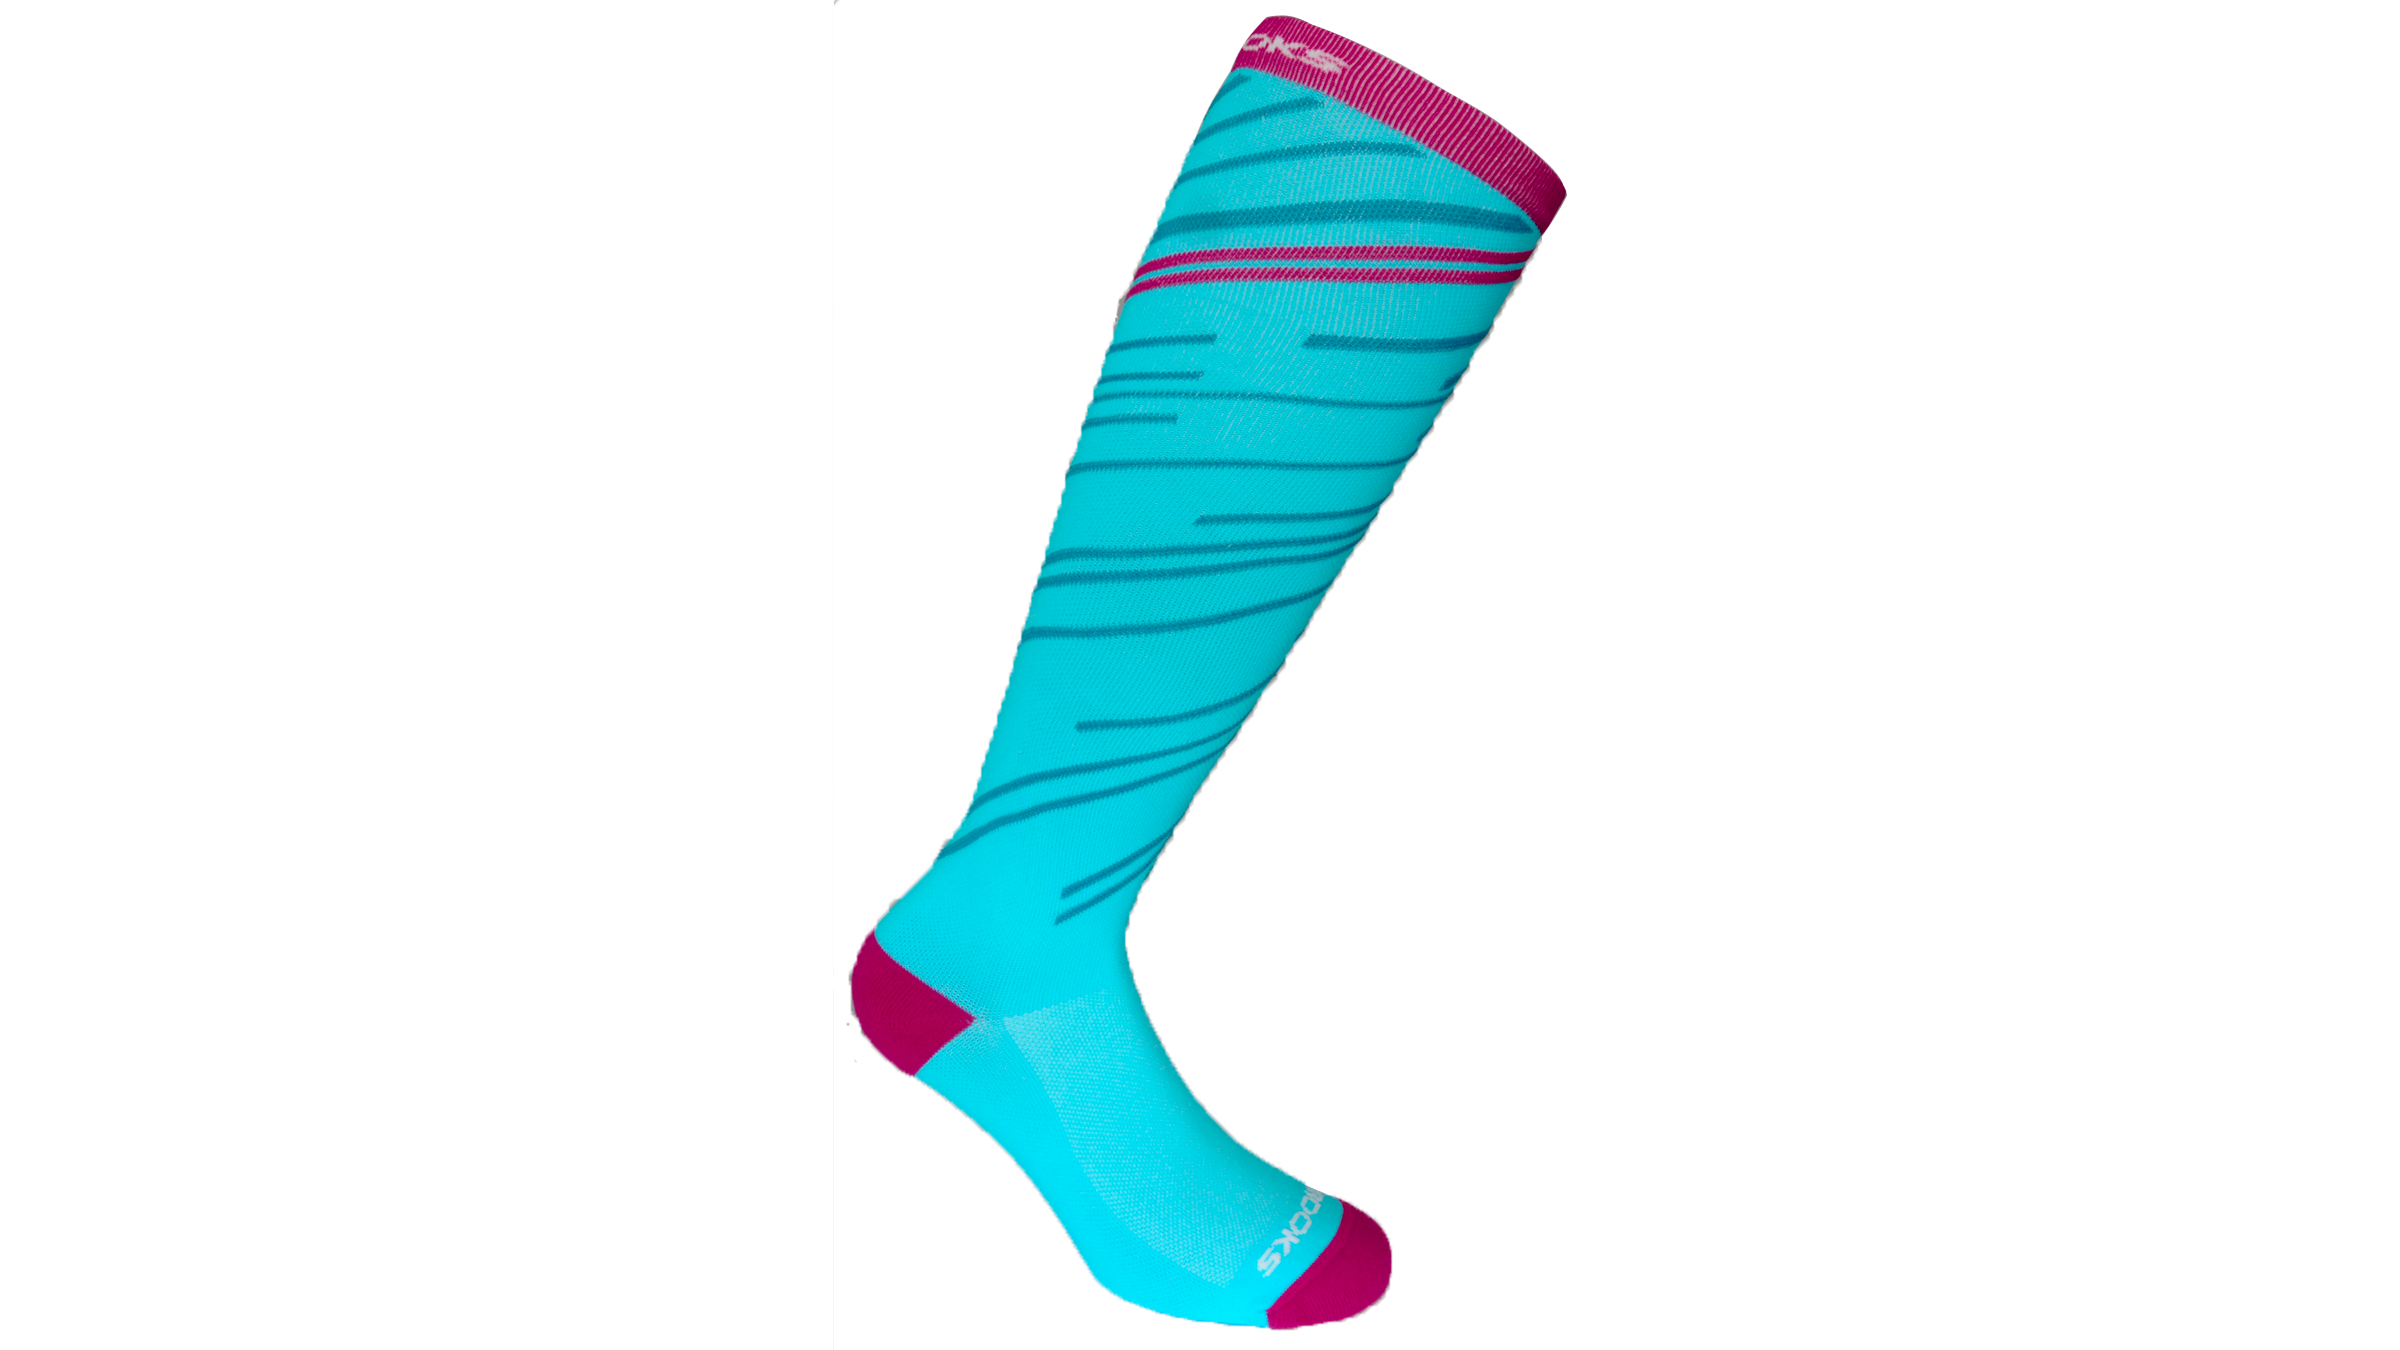 brooks compression socks